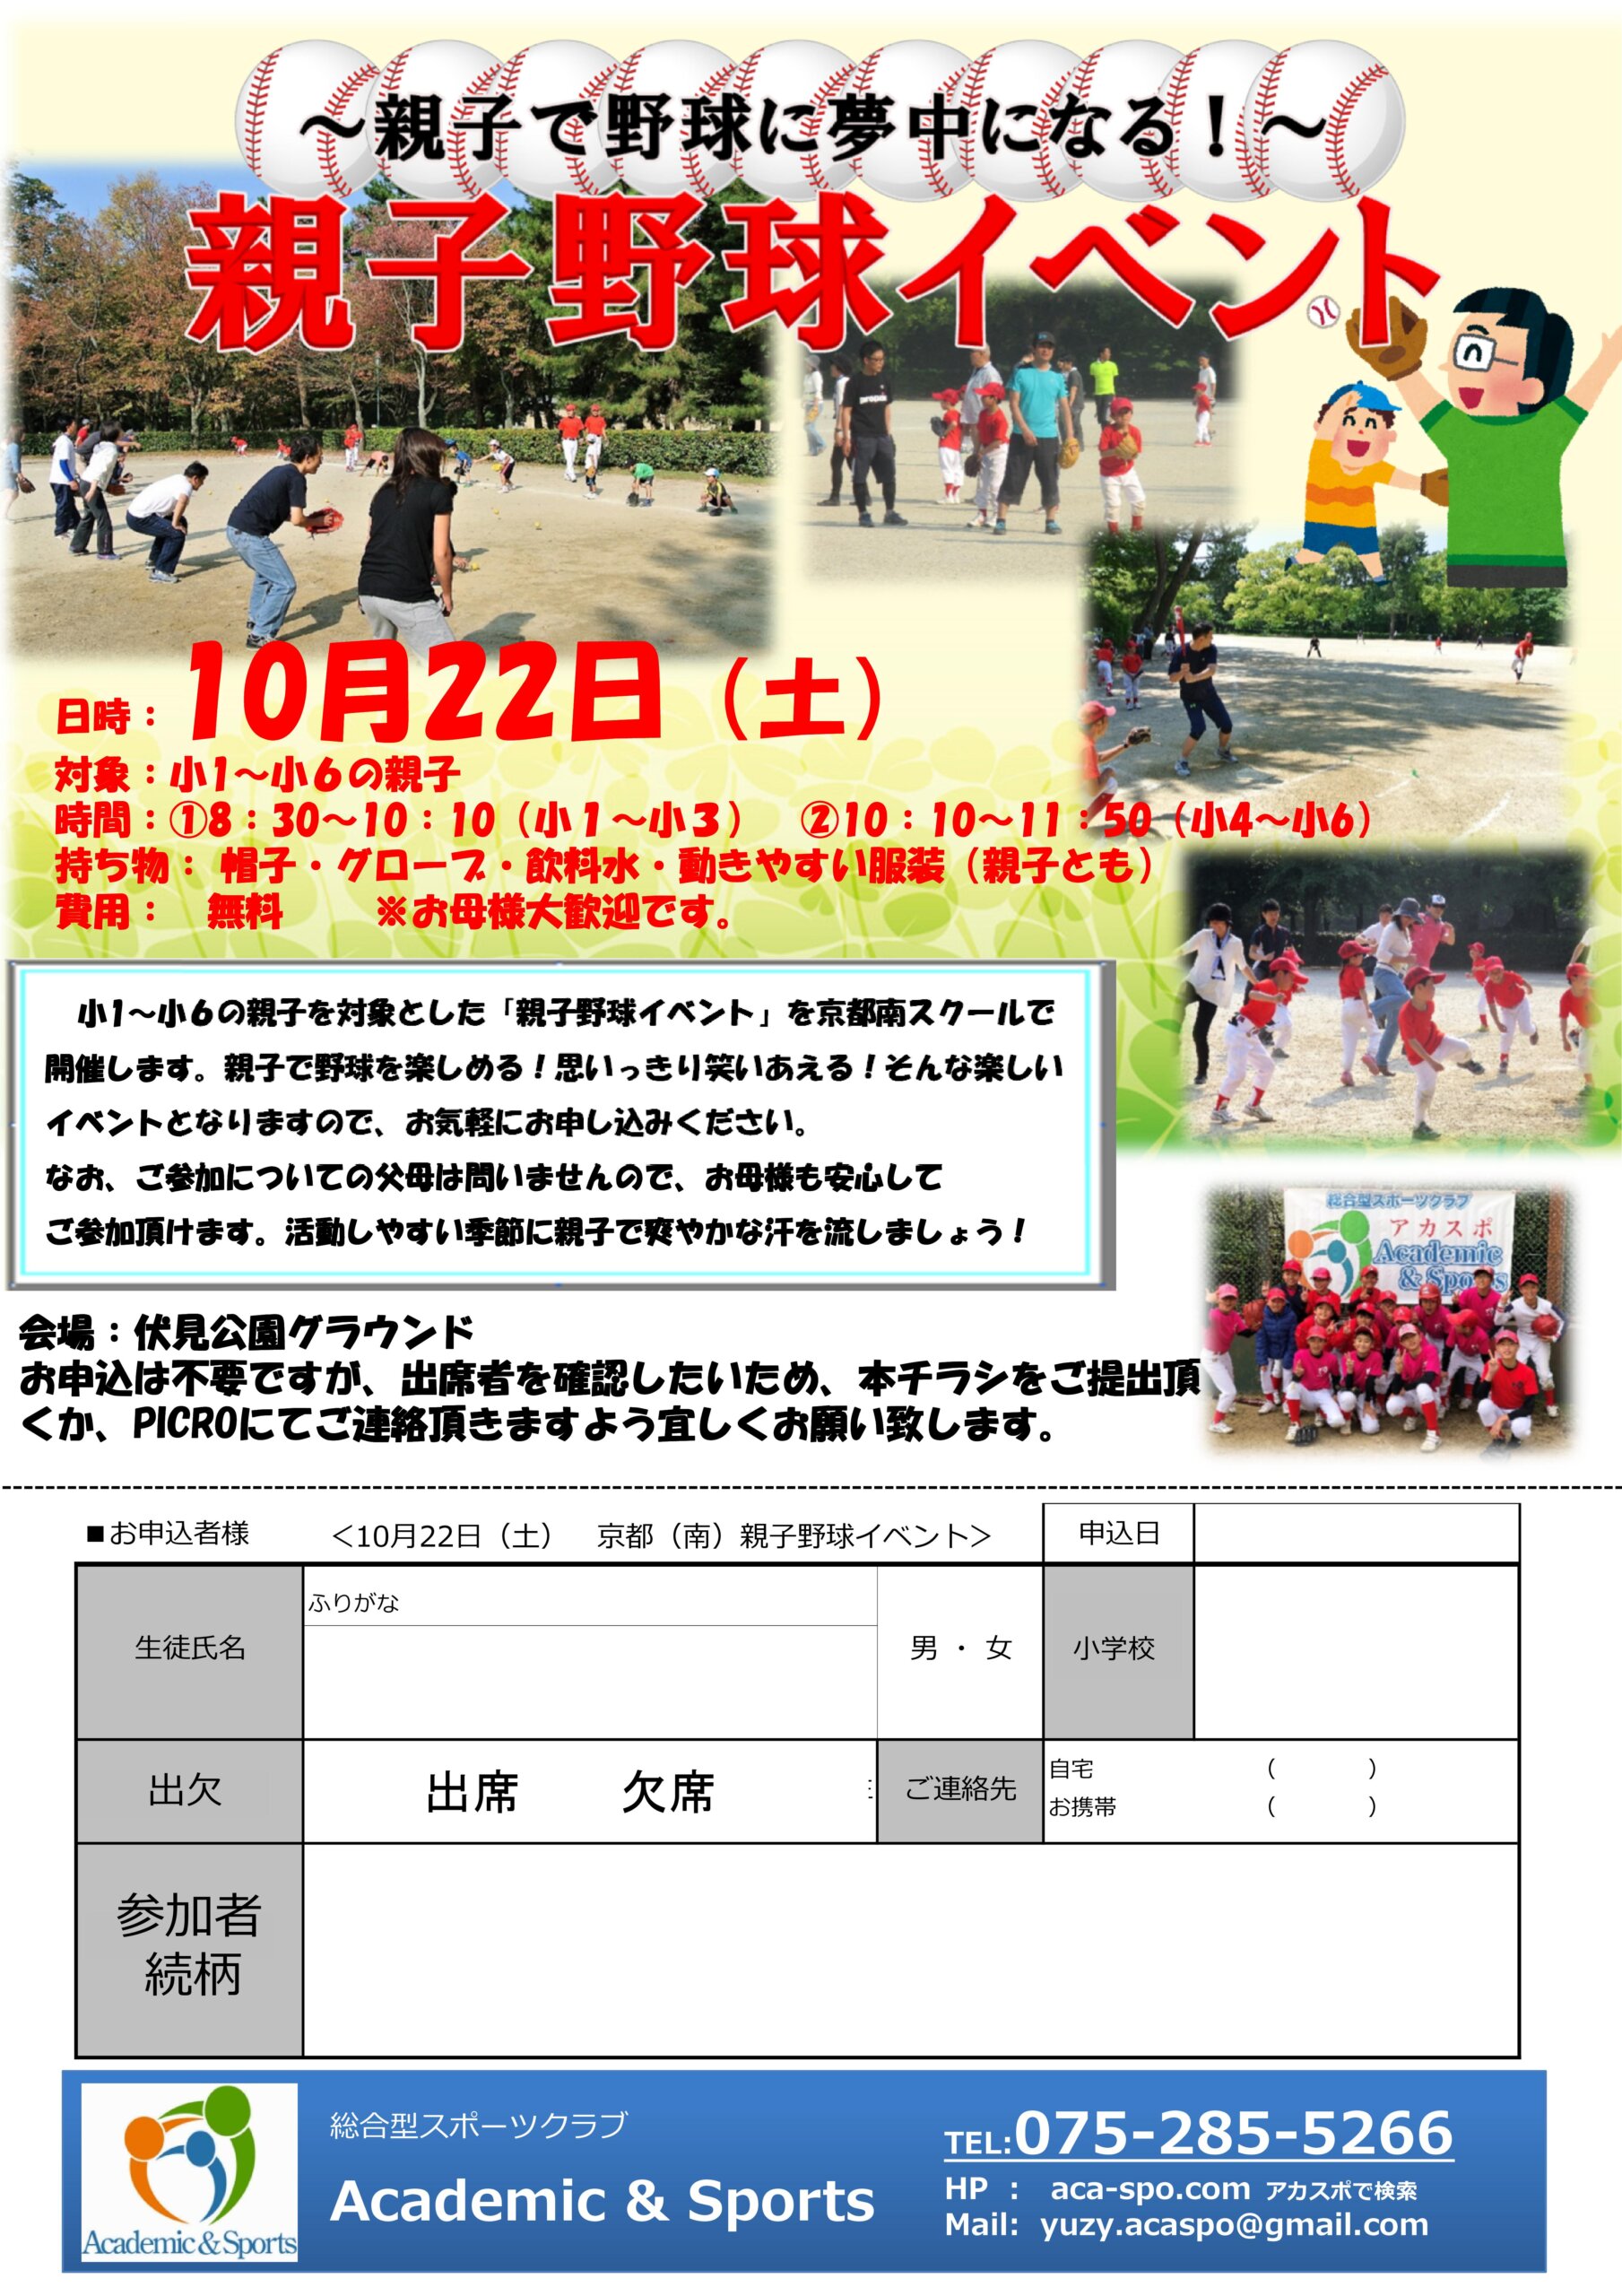 【野球スクール】親子野球イベントIN京都南